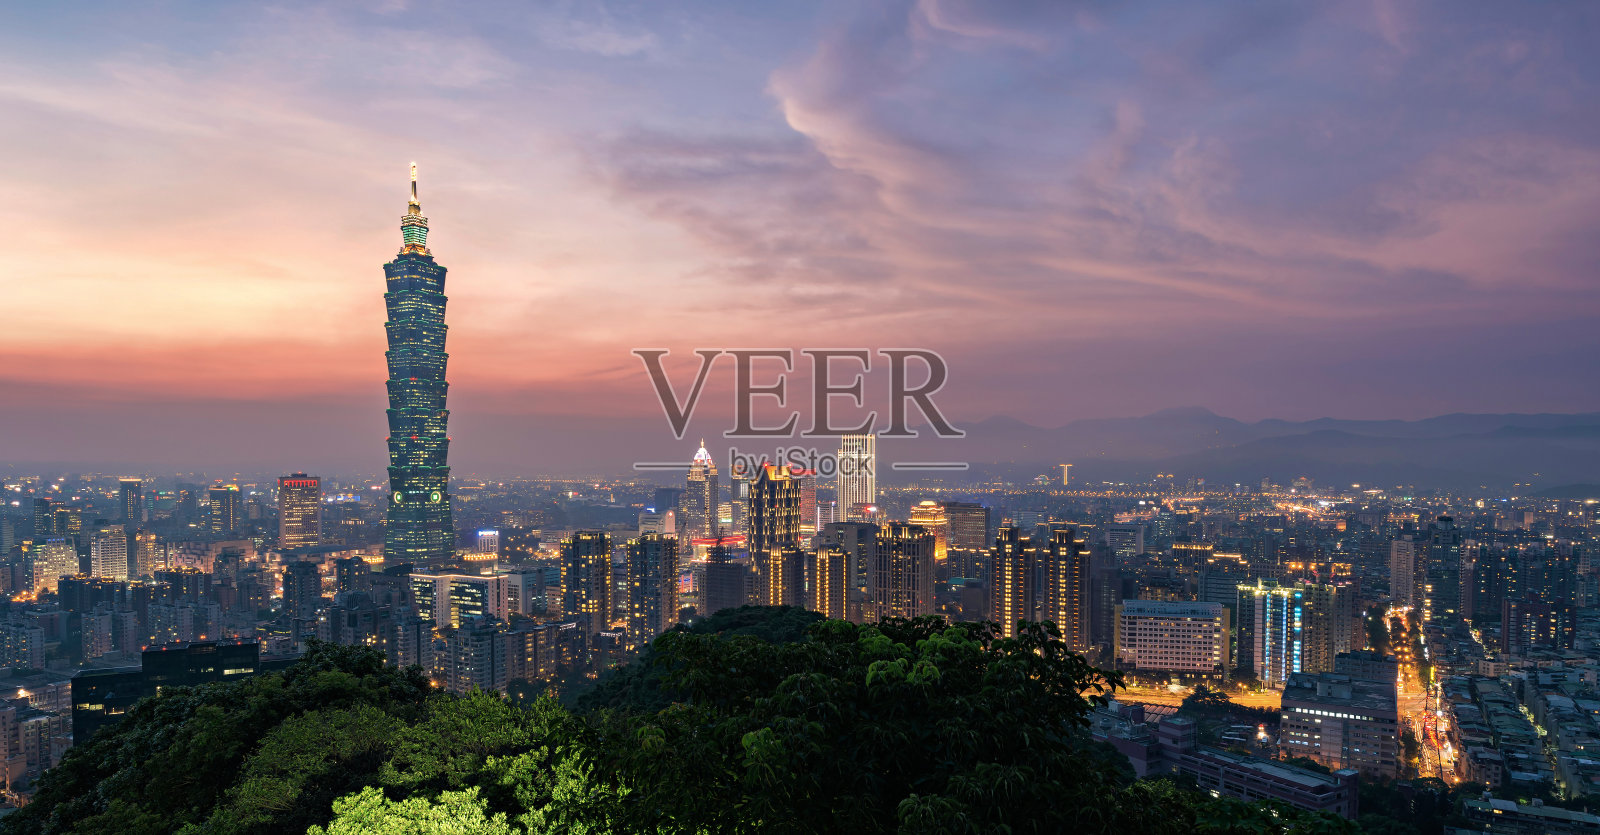 台北101的顶景日落照片摄影图片